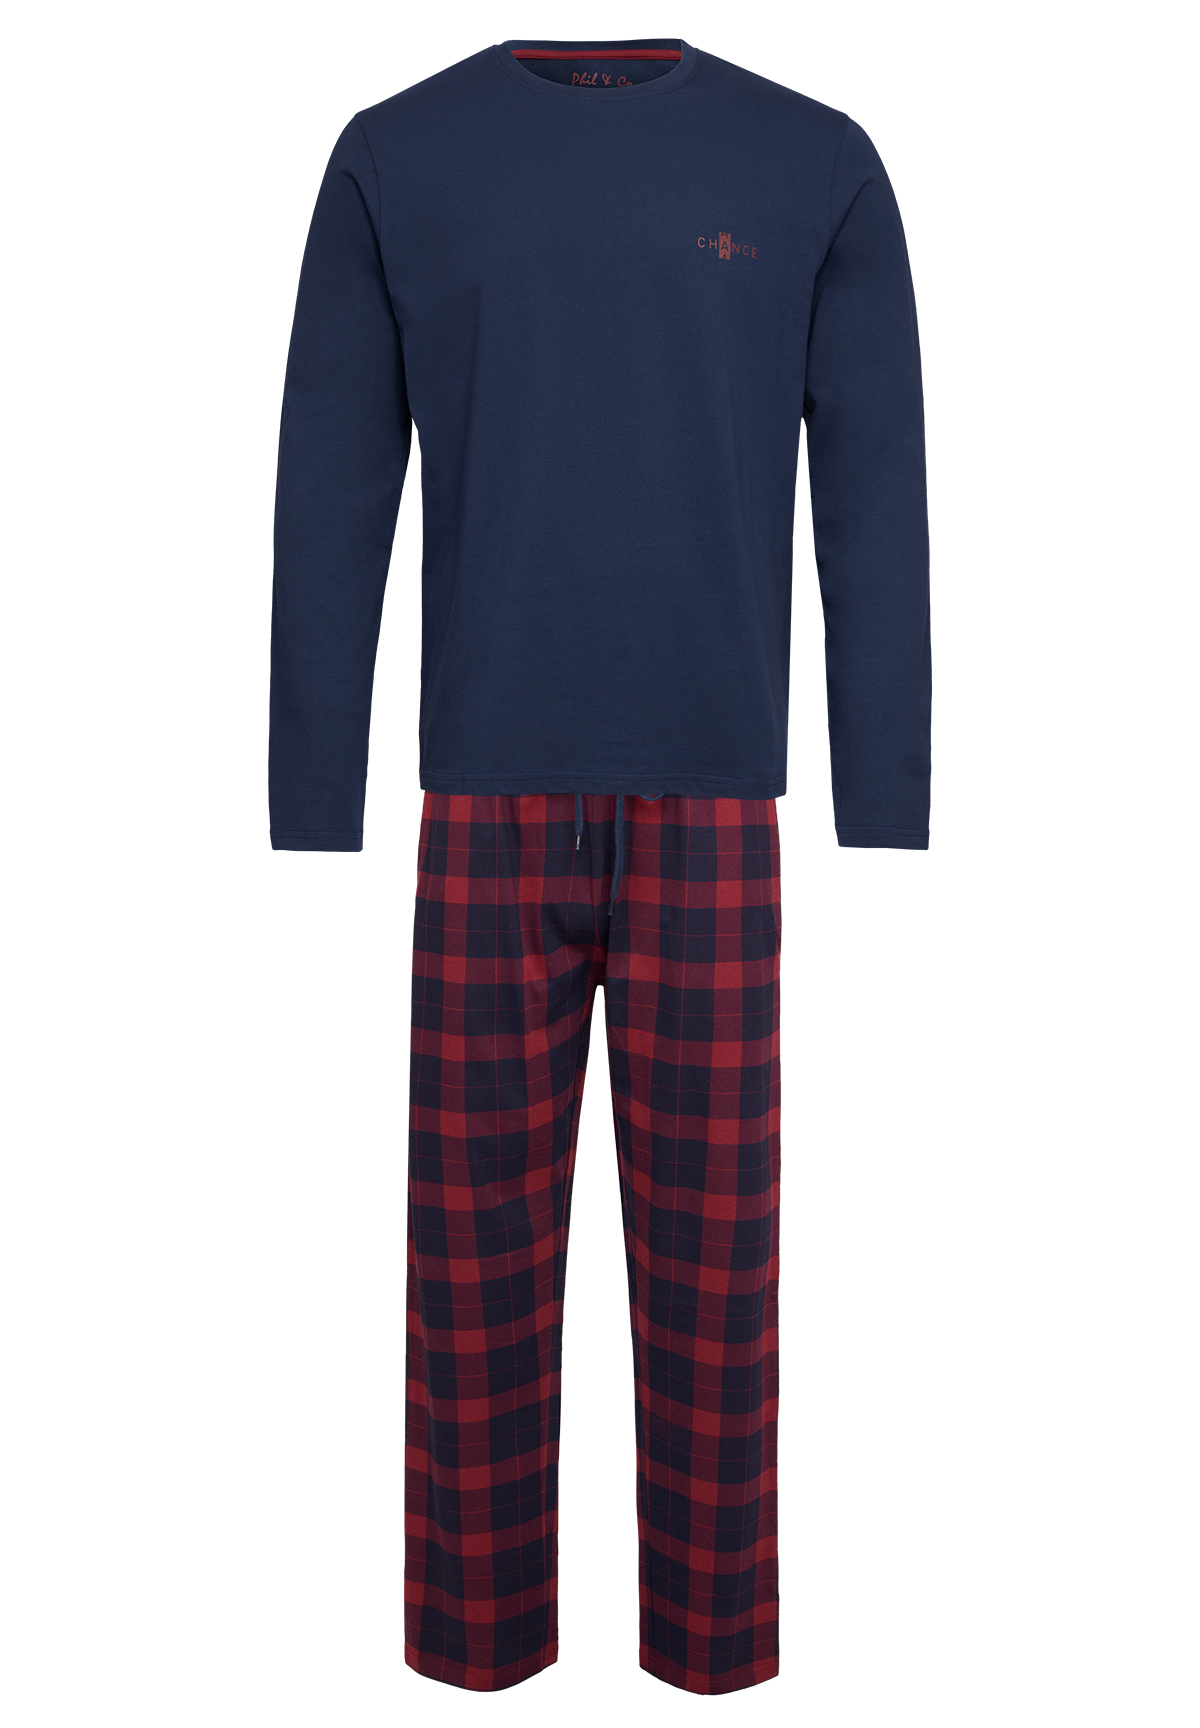 Phil Co Phil Co Lange Heren Winter Pyjama Set Katoen Geblokt Donkerblauw